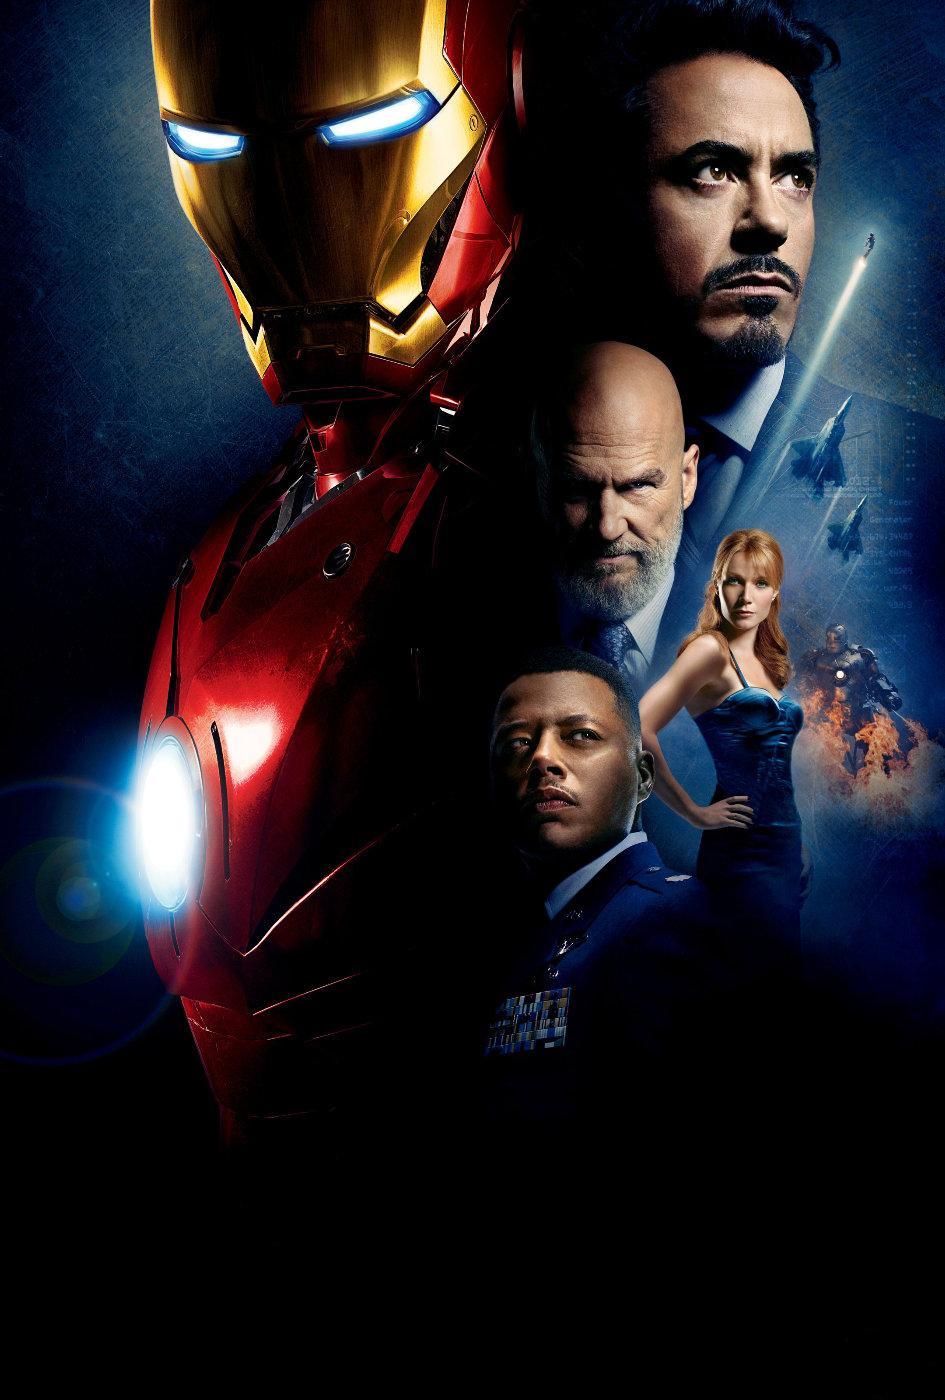 Descarga gratuita de fondo de pantalla para móvil de Iron Man, Cine.